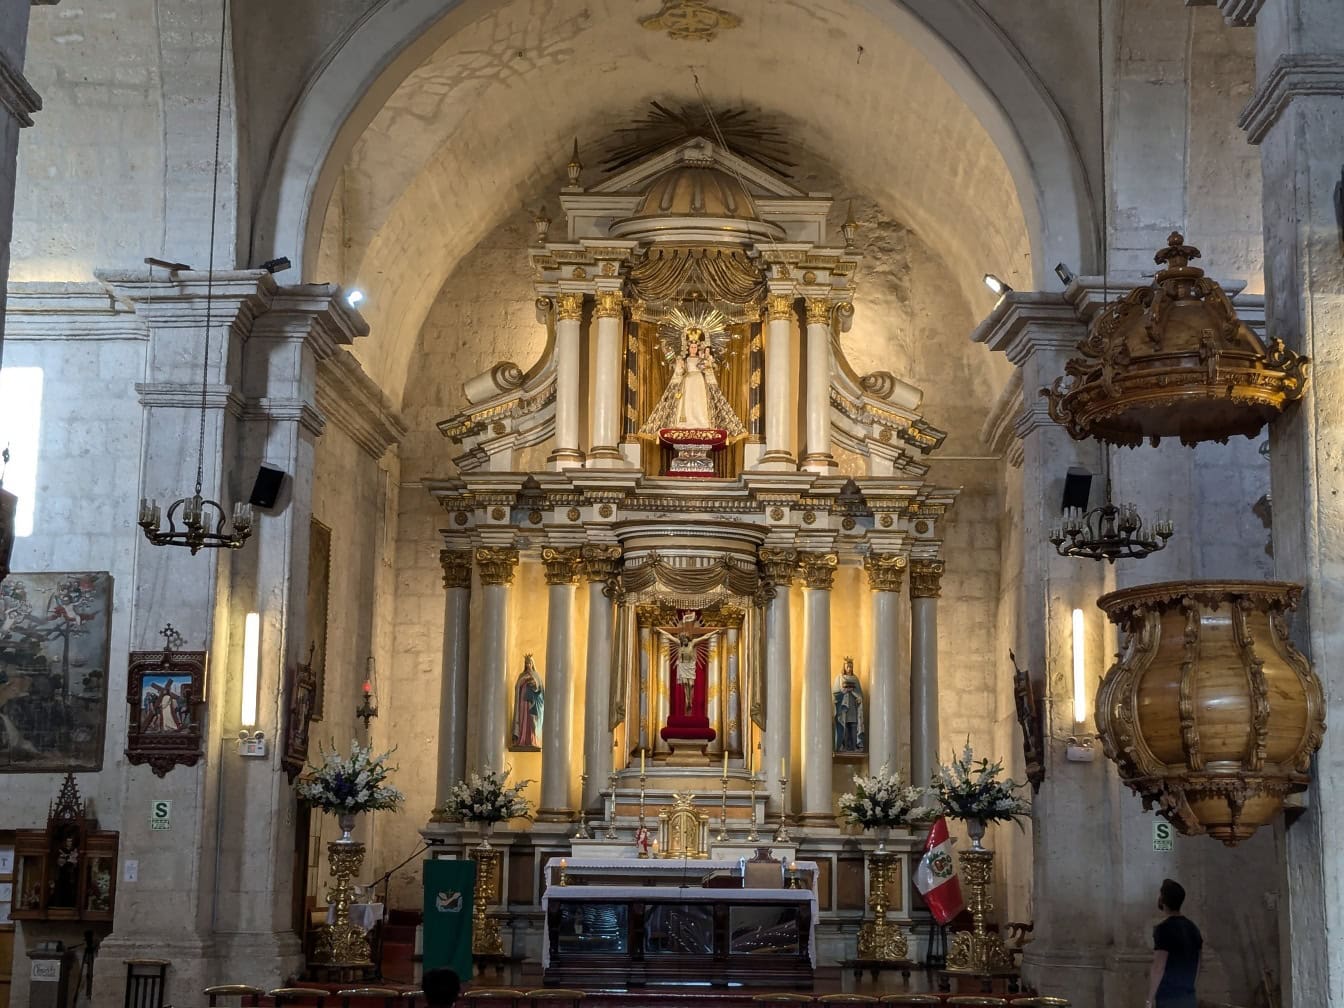 Wnętrze kościoła katolickiego w Peru z posągami na ozdobnym ołtarzu